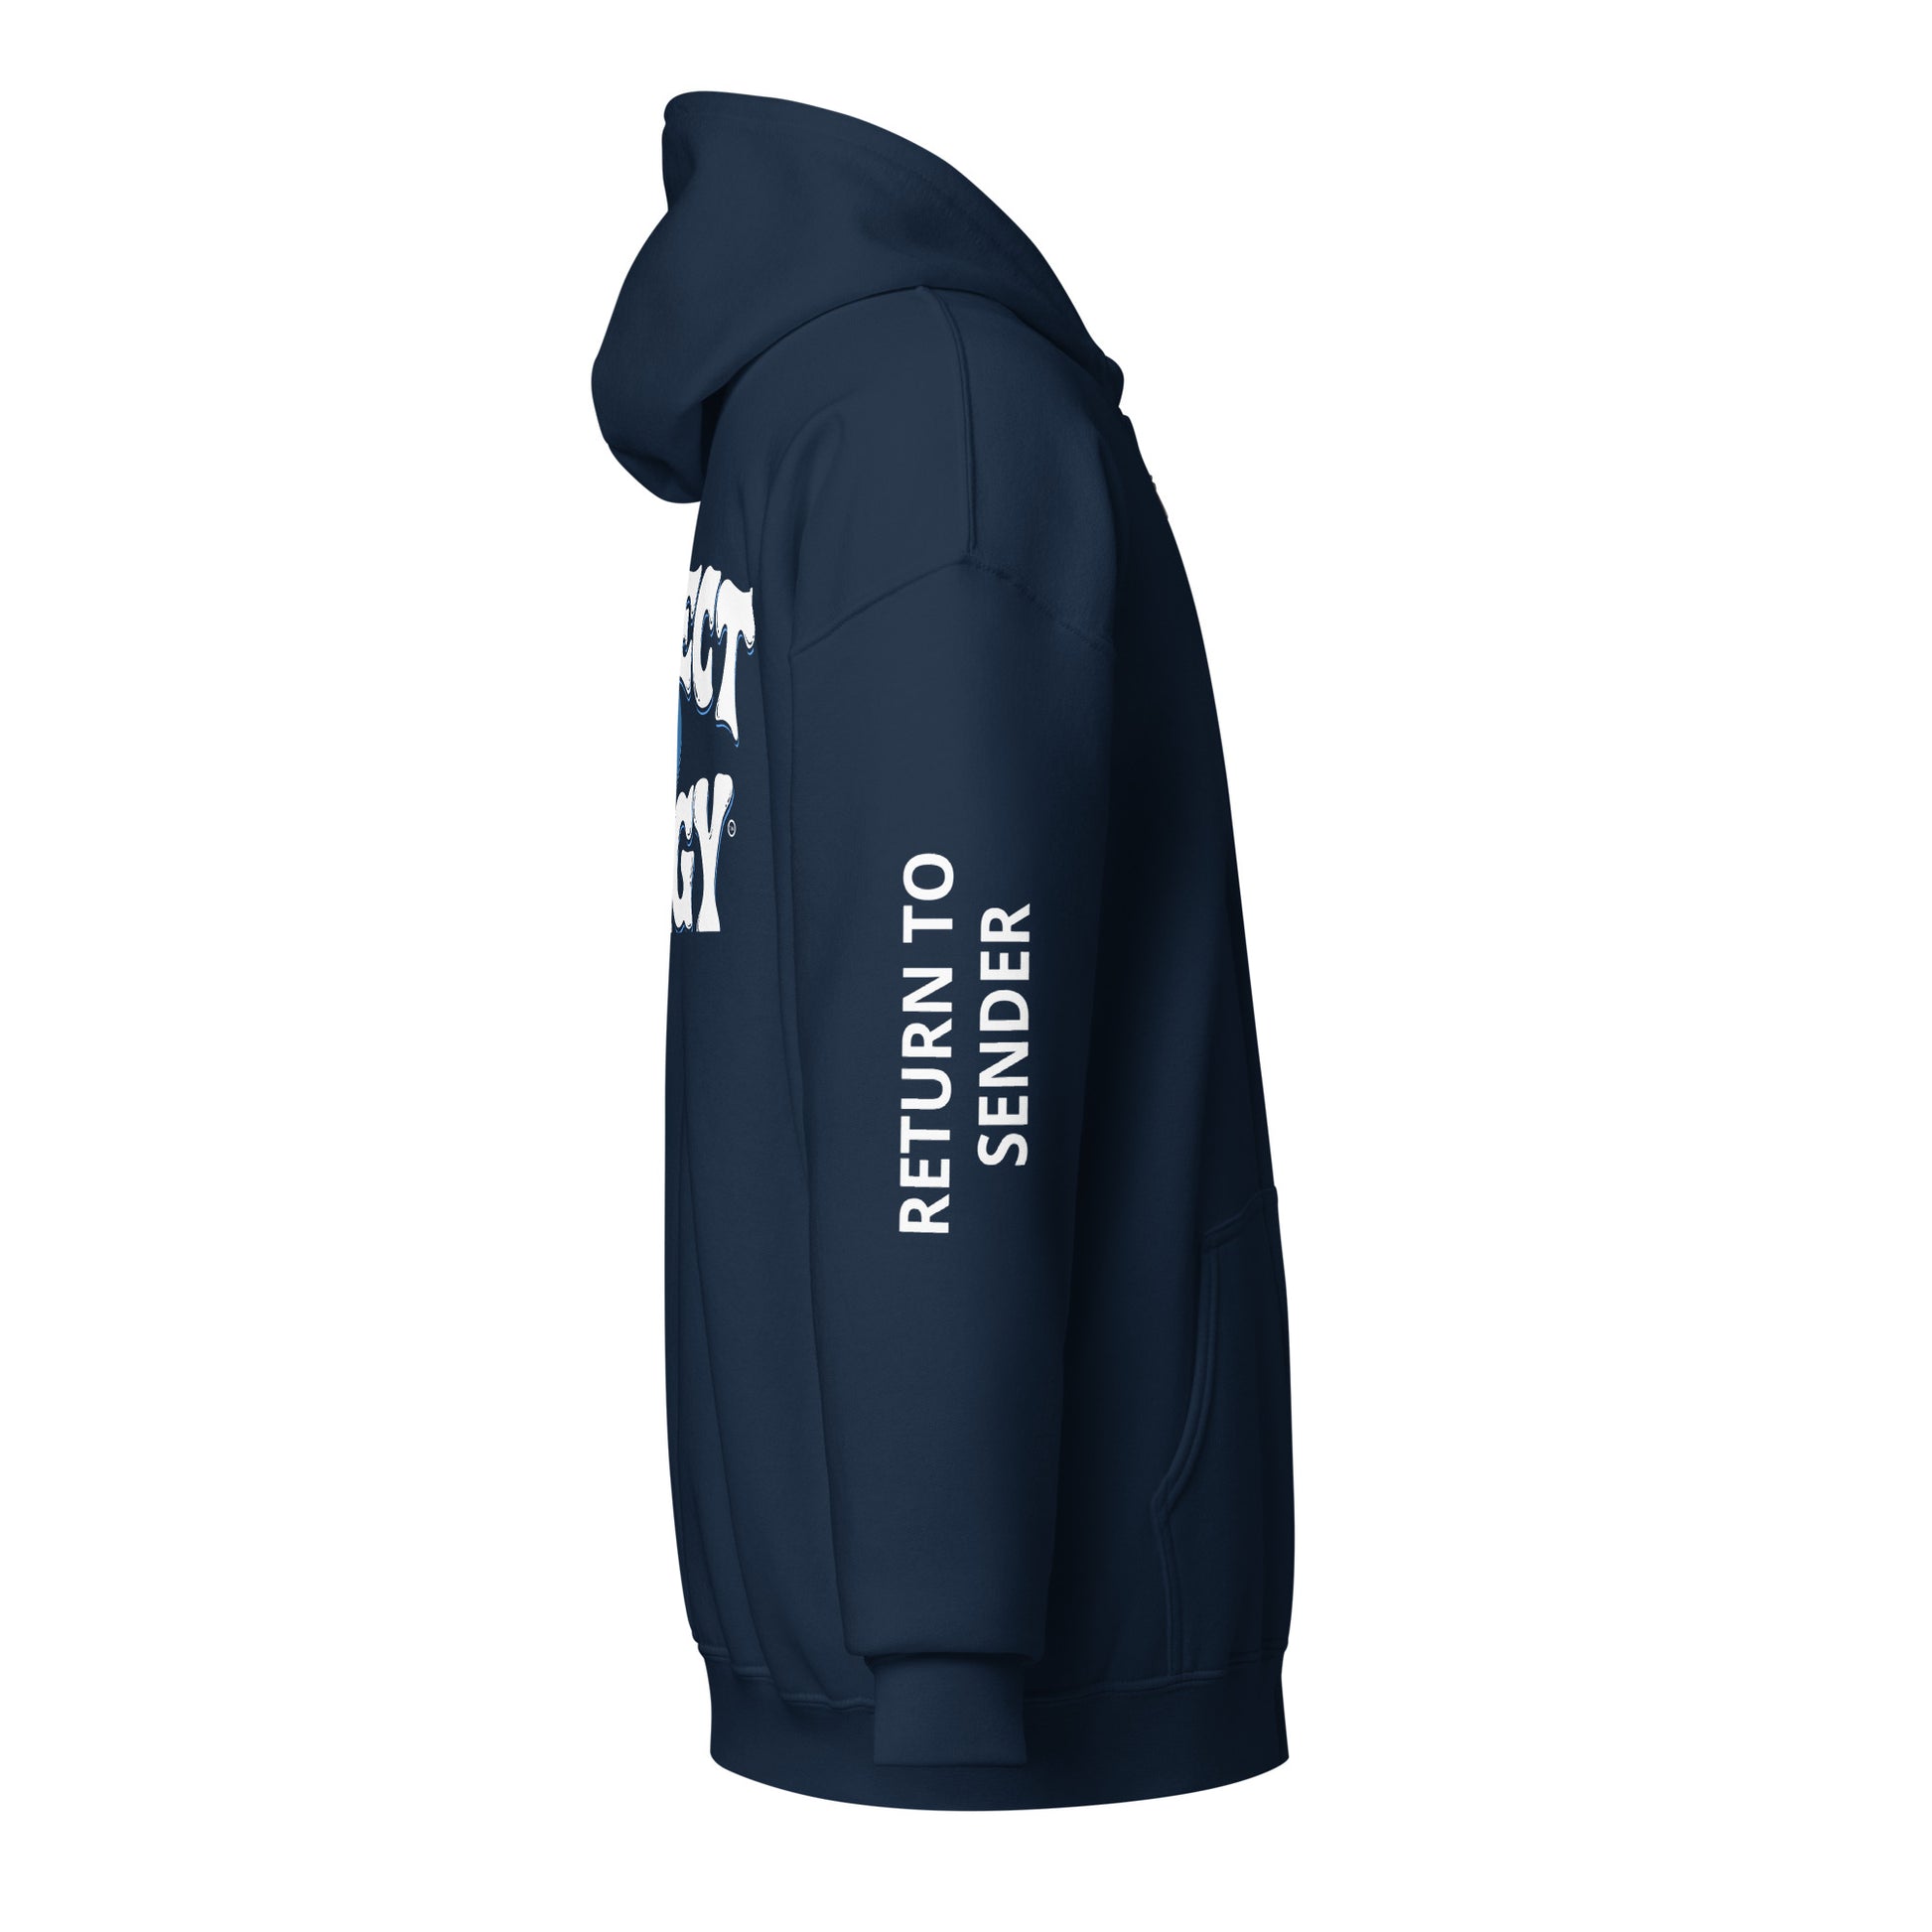 AF zip hoodie - PROTECT YO ENERGY 